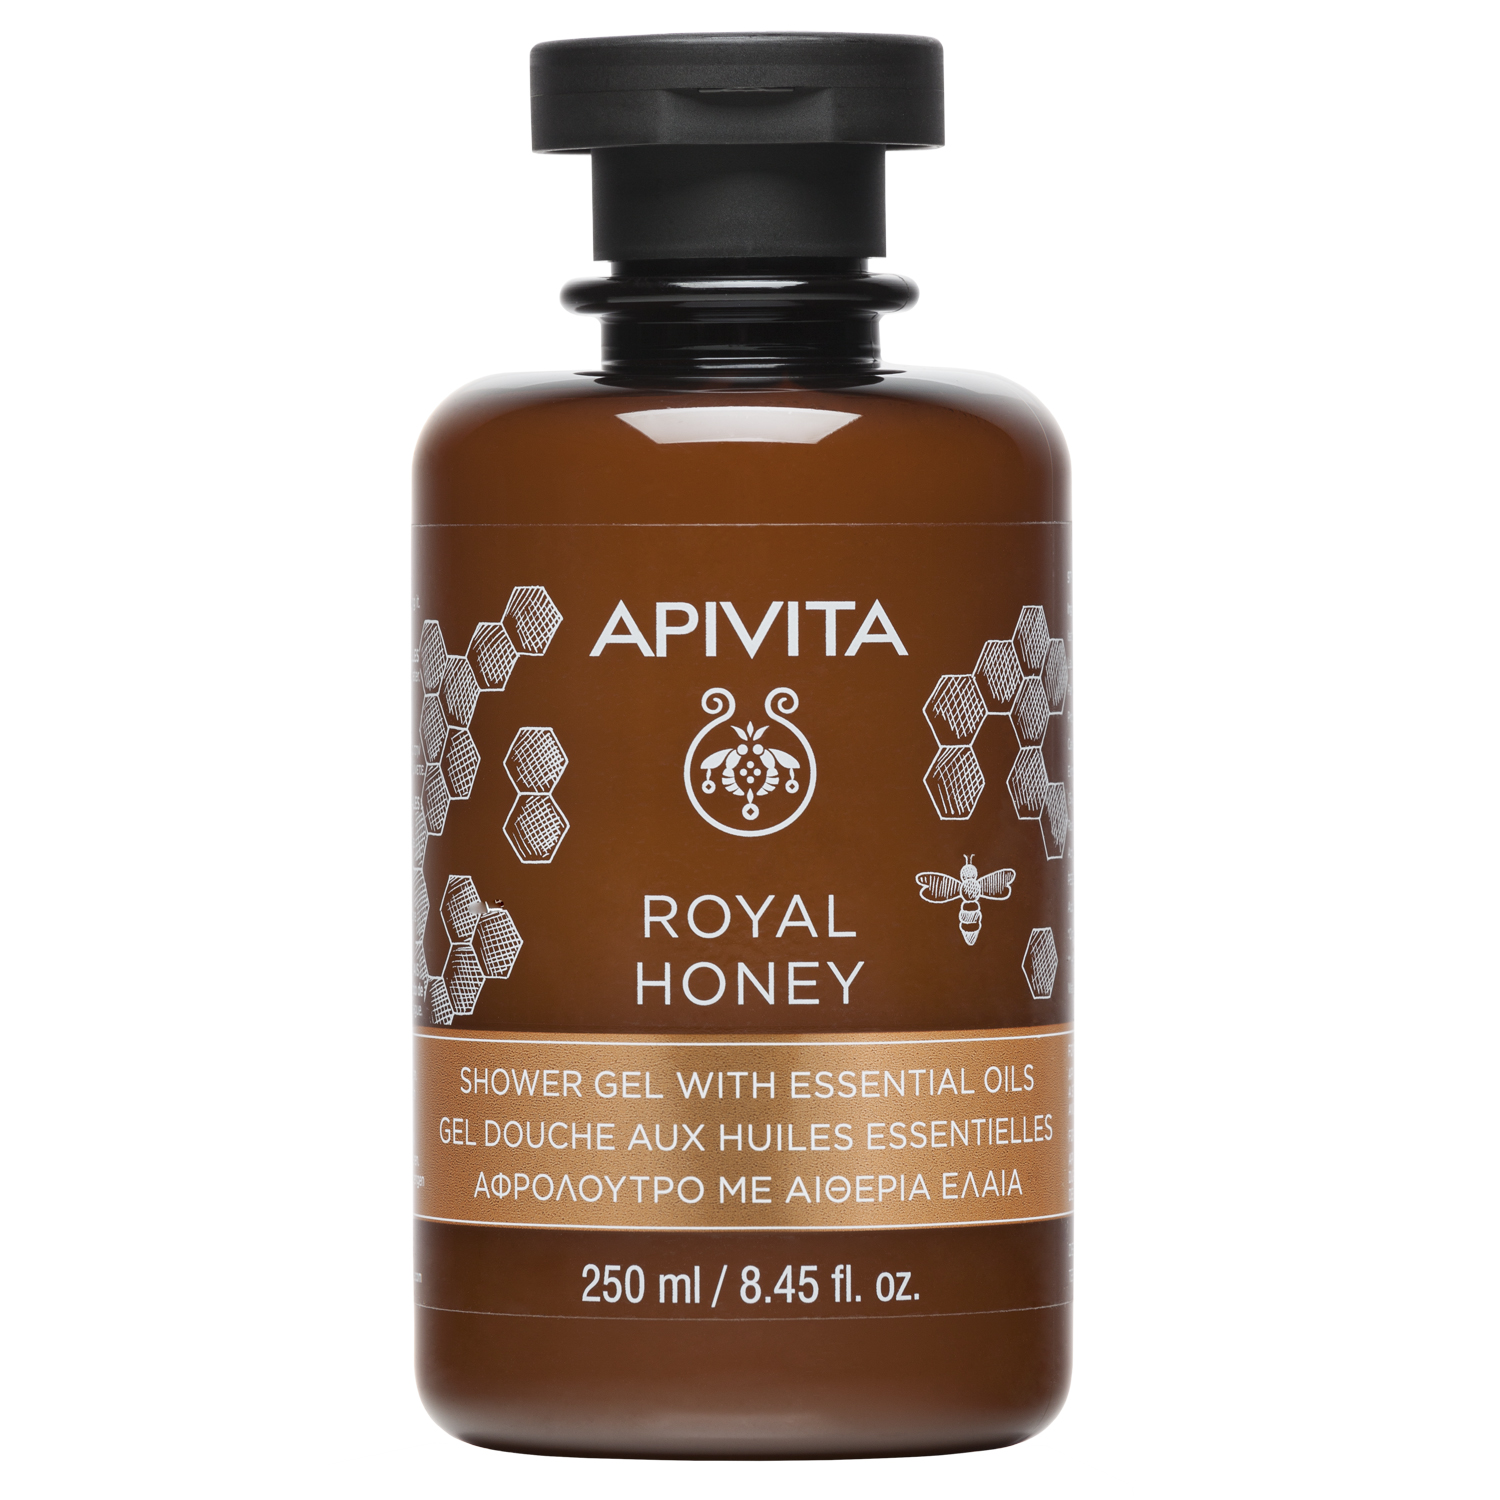 Apivita Гель для душа Королевский мед с эфирными маслами, 250 мл (Apivita, Body) apivita миниатюра гель для душа горный чай с эфирными маслами 75 мл apivita body